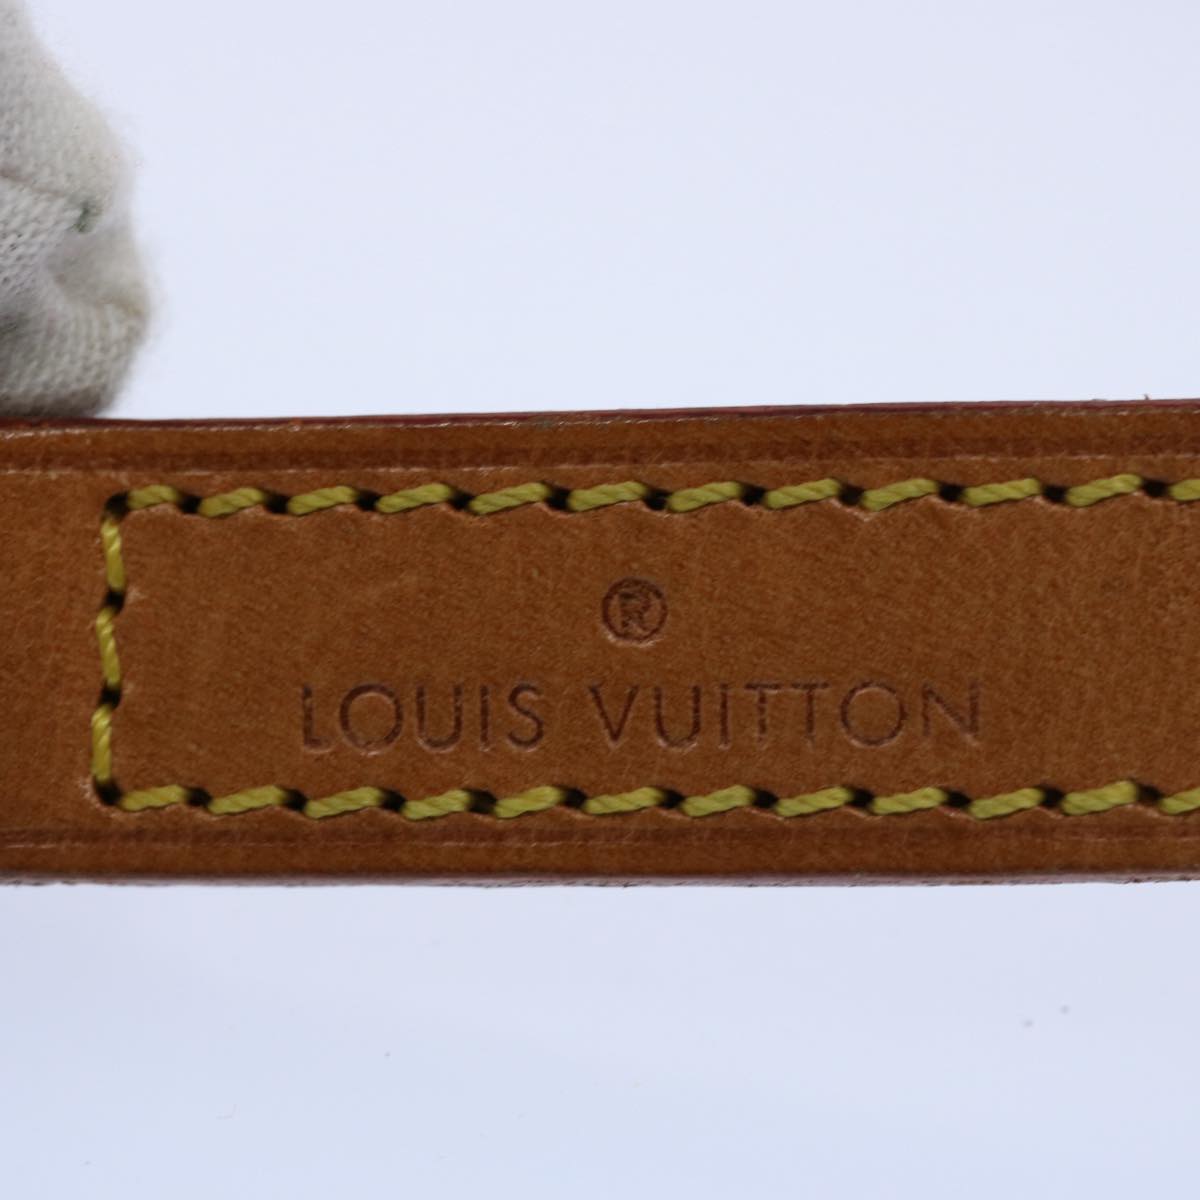 LOUIS VUITTON Shoulder Strap Leather 35.4"" Beige LV Auth 61188